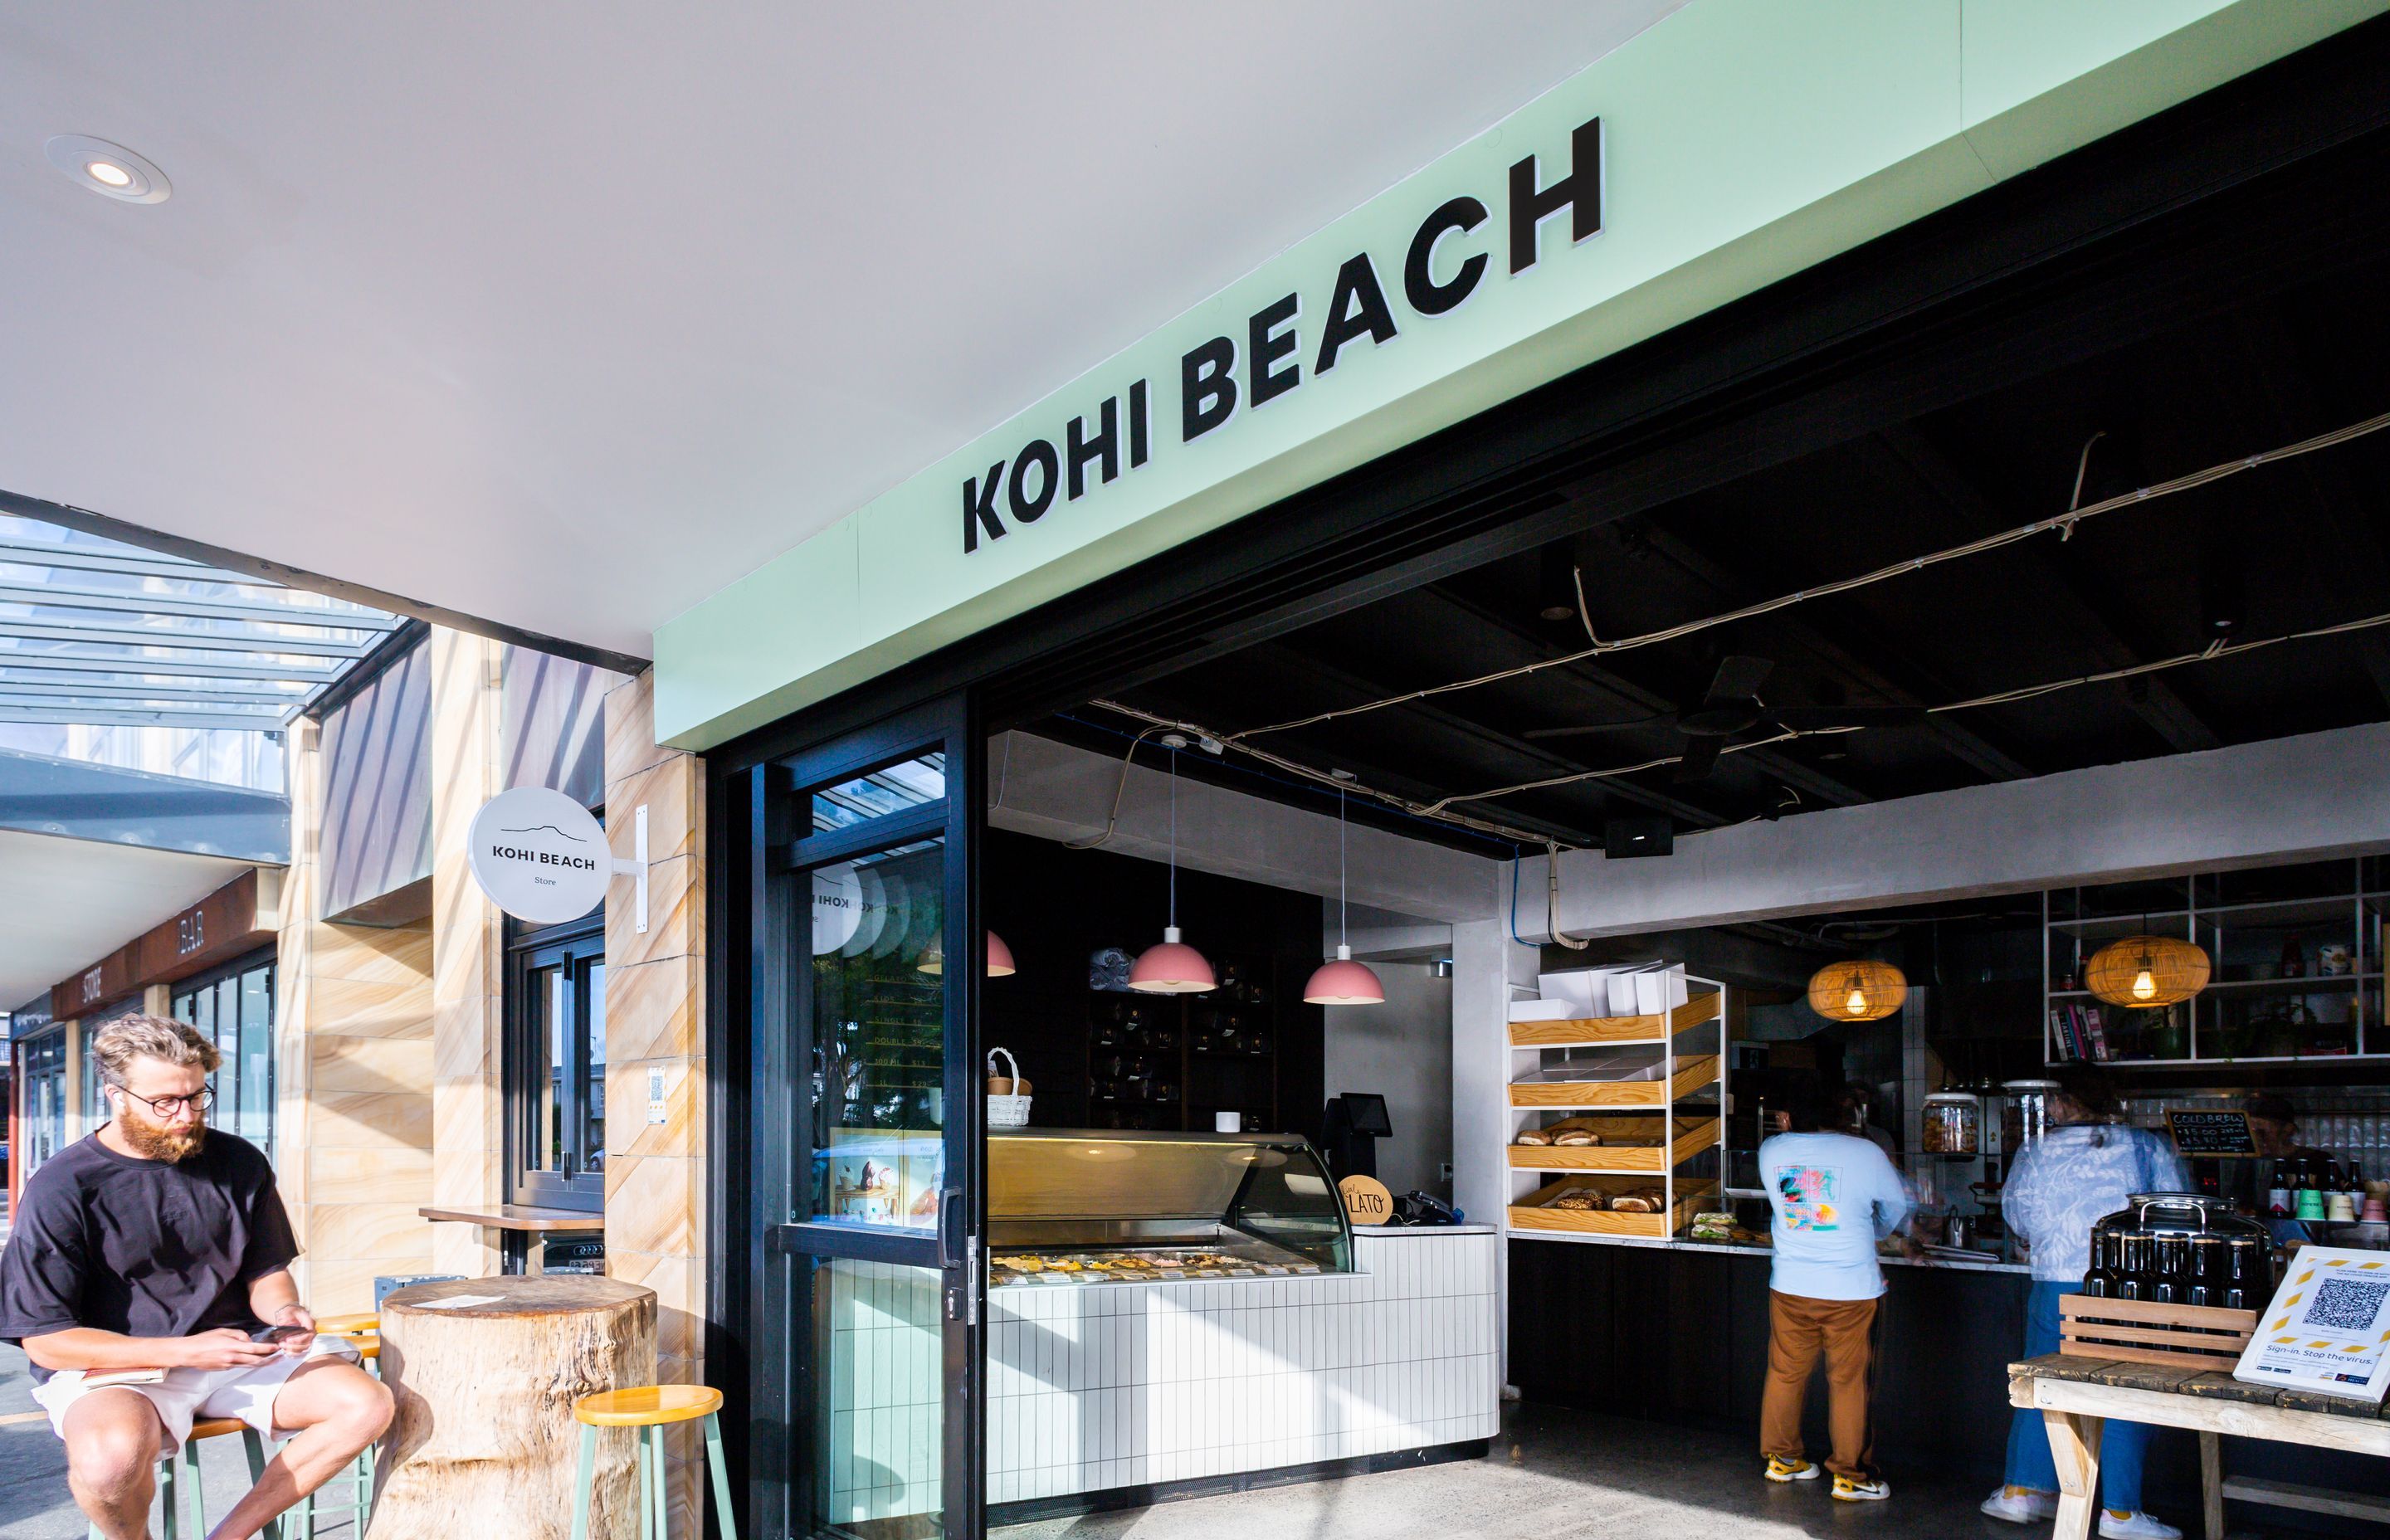 Kohi Beach Eatery and Store